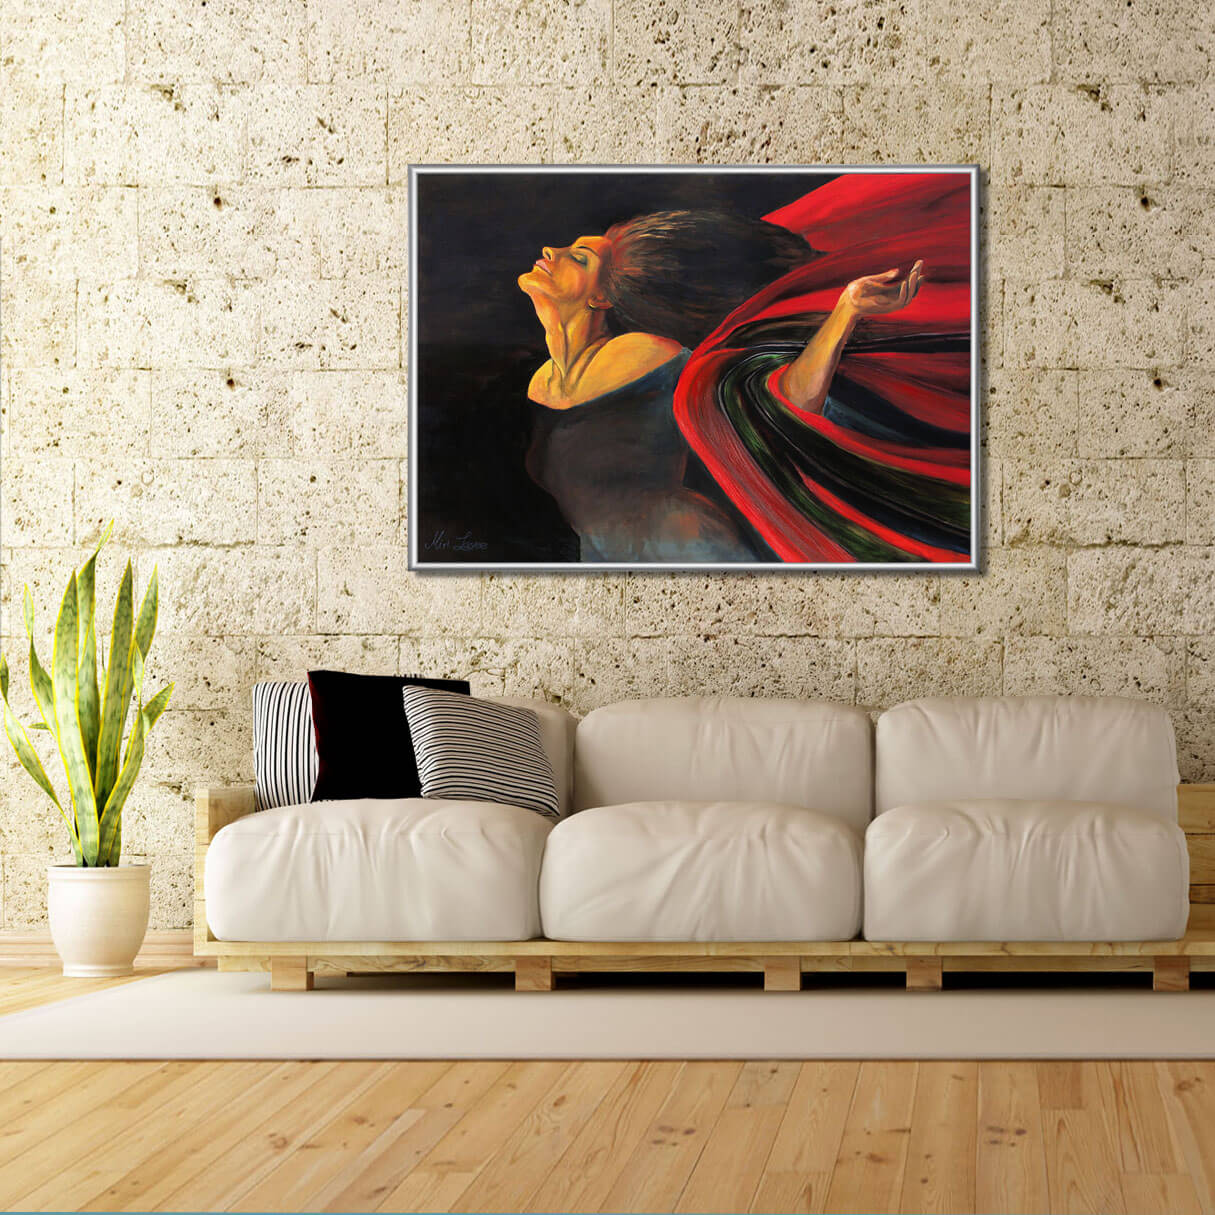 ציור אישה עפה בשחור ואדום מקולקצית הציורים "צבעי מקסיקו" בסלון מעוצב מעל ספה בהירה ציירת מירי לביא